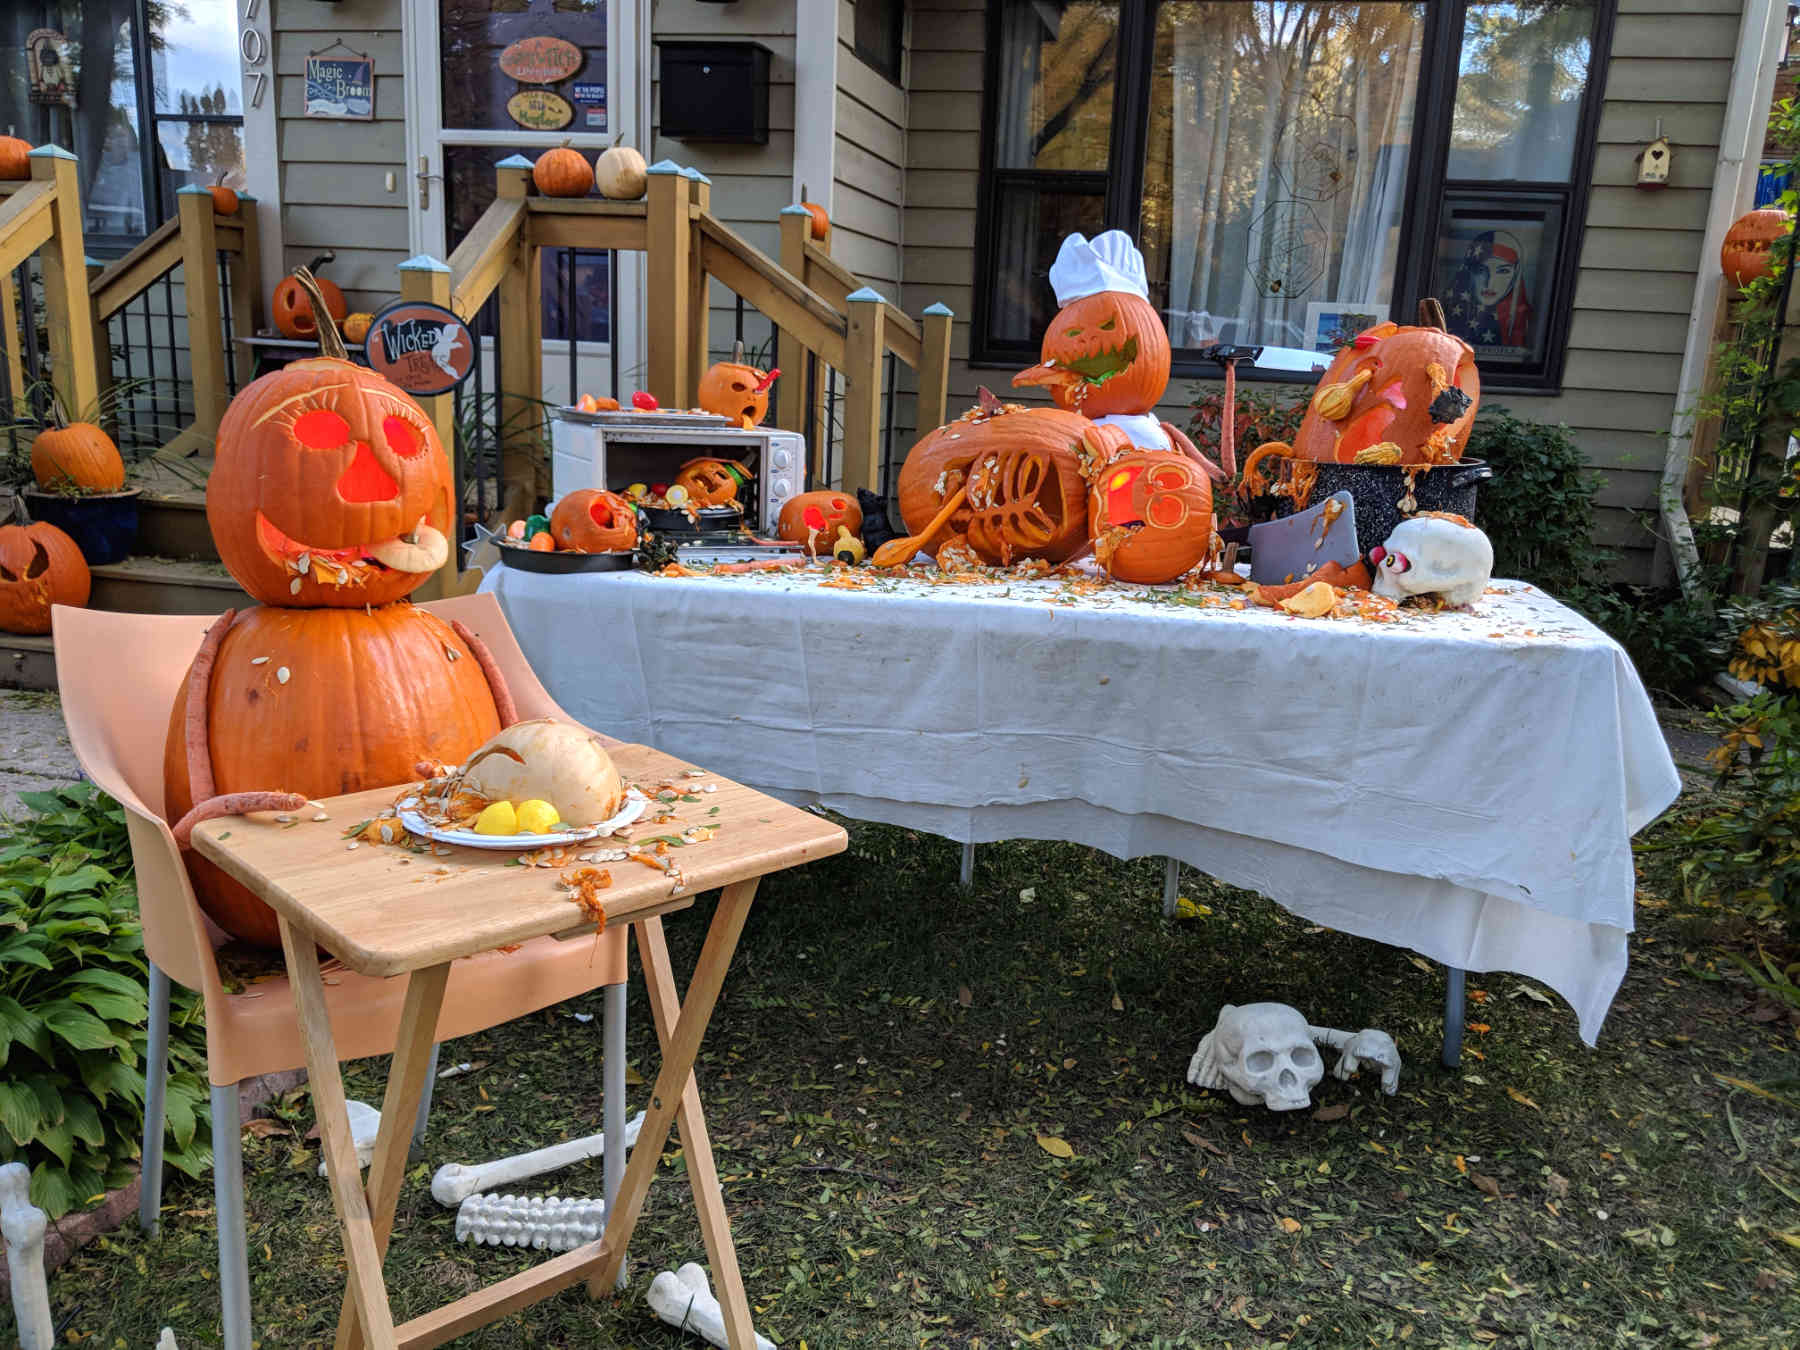 Carved pumpkin display with pumpkins eating pumpkins